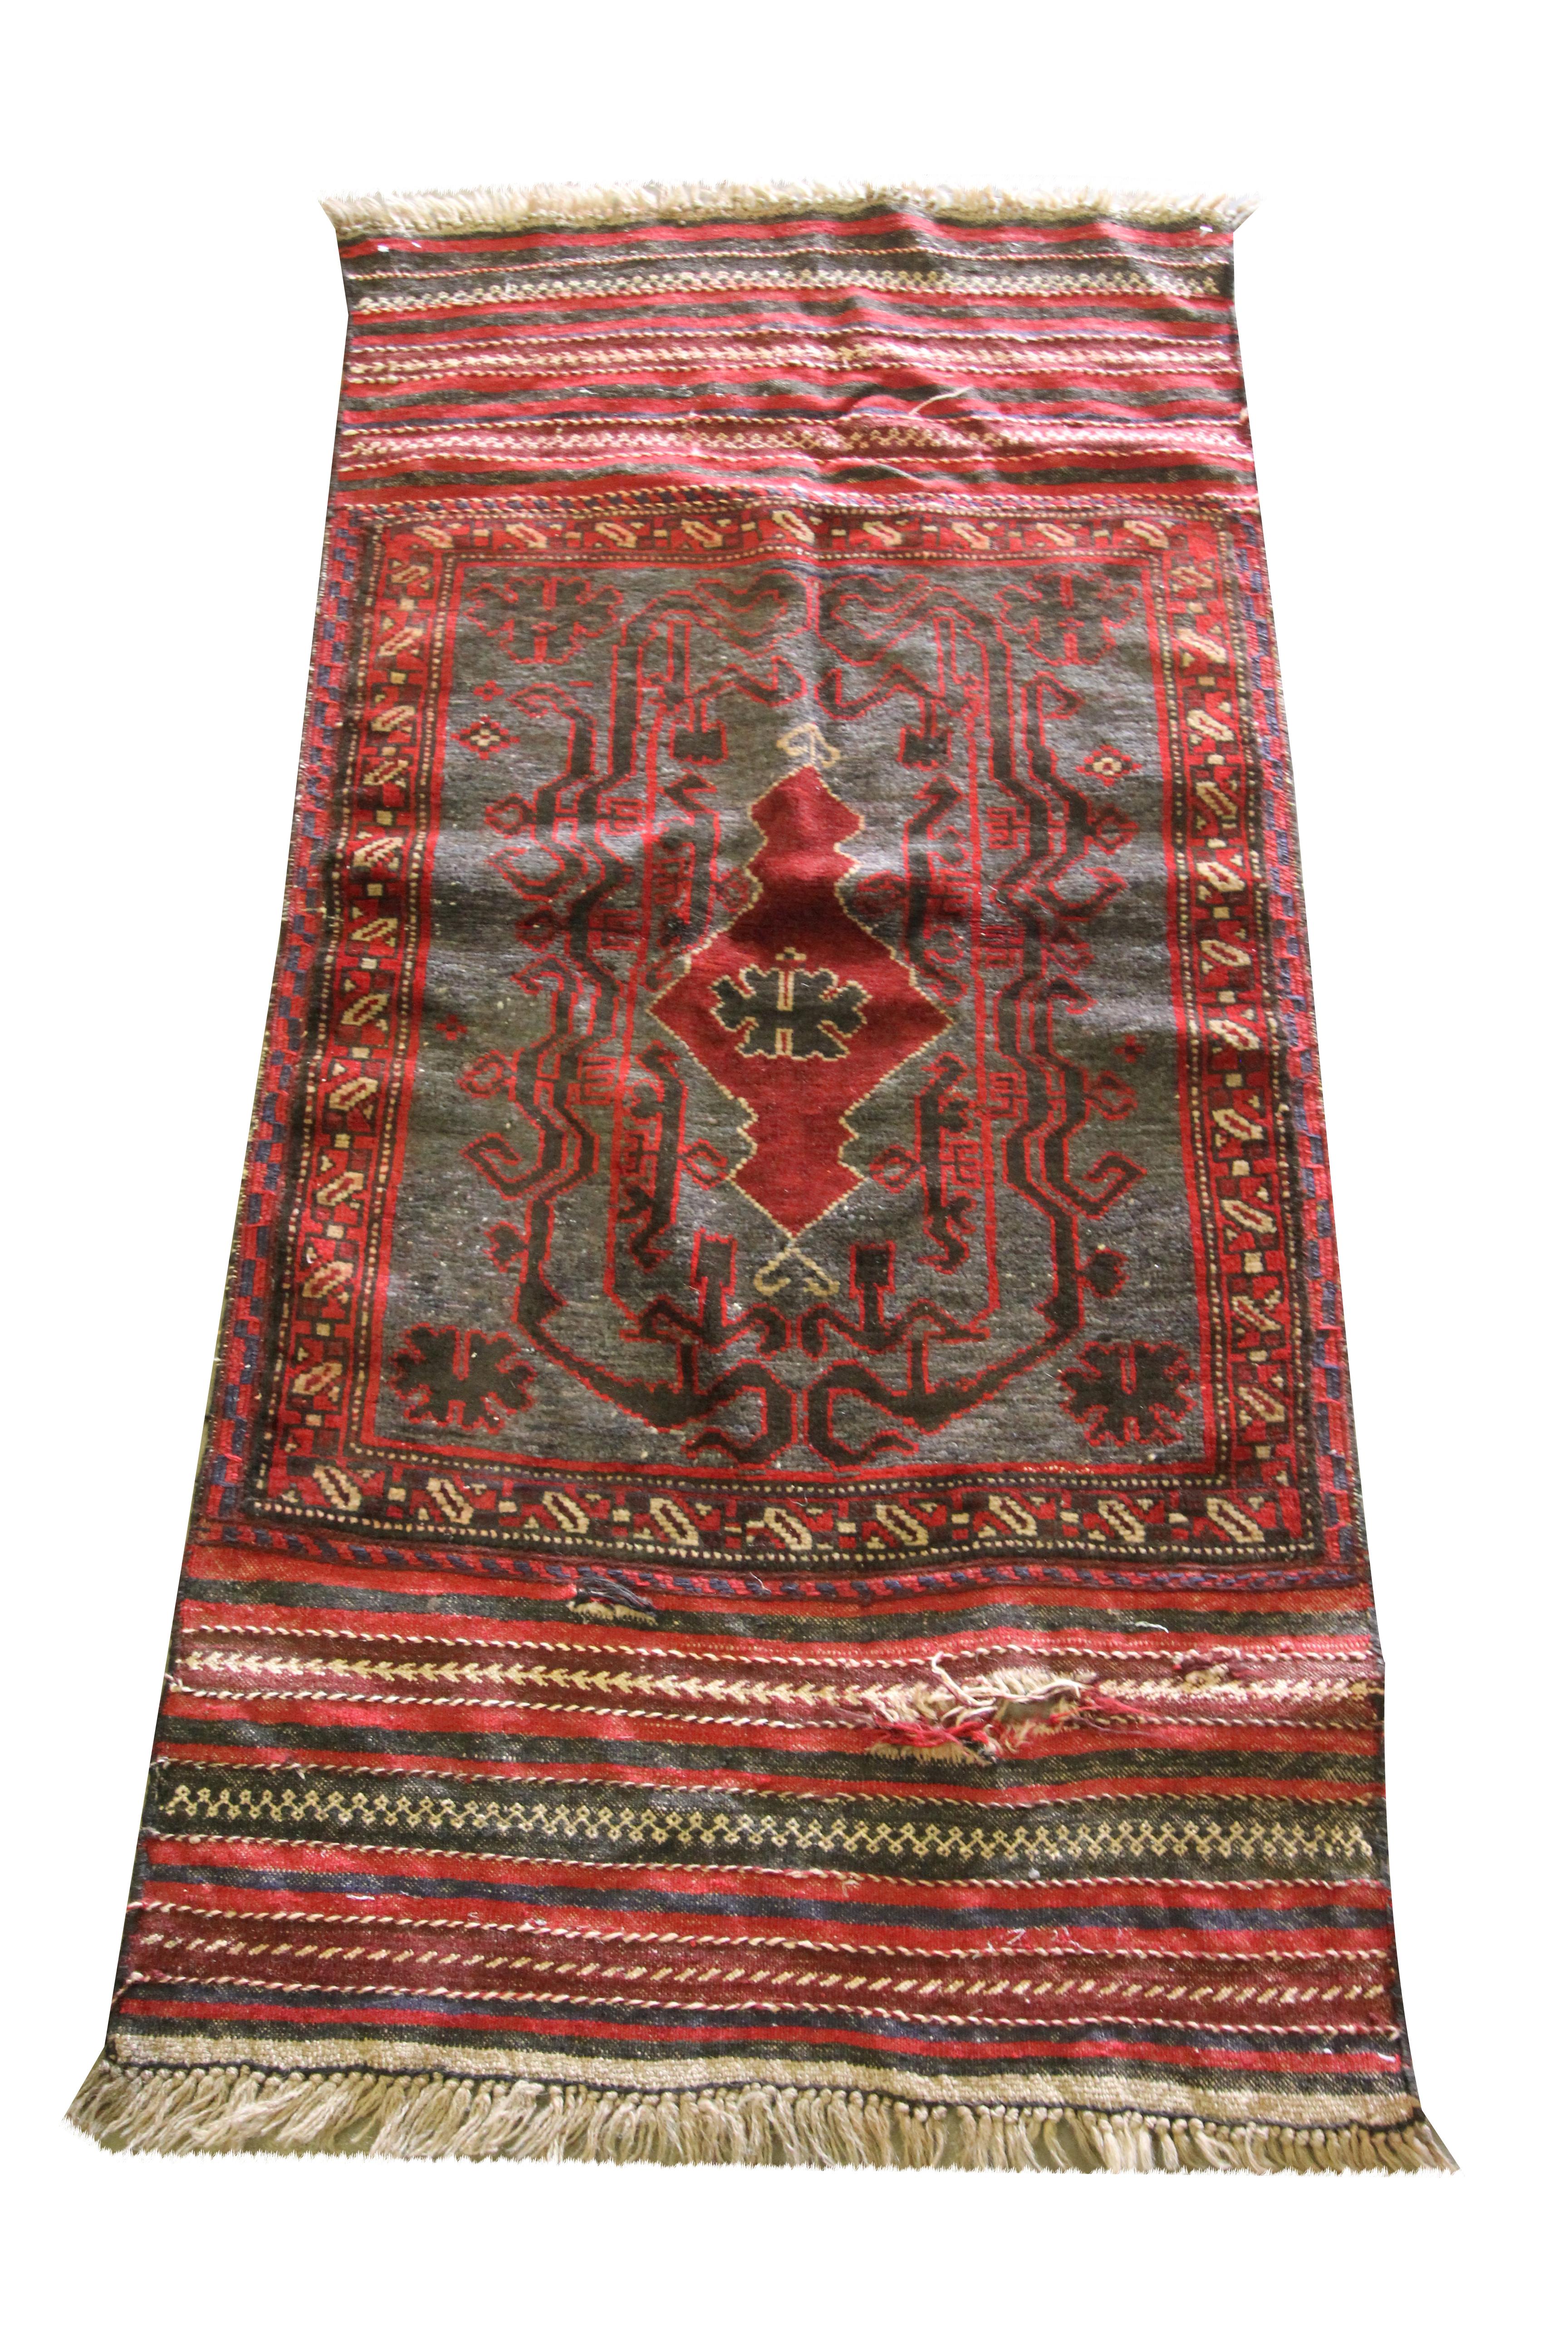 Dieser schöne rote Teppich ist ein alter afghanischer Belutsch, der Mitte des 20. Jahrhunderts, um 1950, von Hand gewebt wurde. Das Design zeichnet sich durch ein kühnes zentrales Motiv aus, das in Rot und Grau gewebt ist. Umrahmt wird das Ganze von